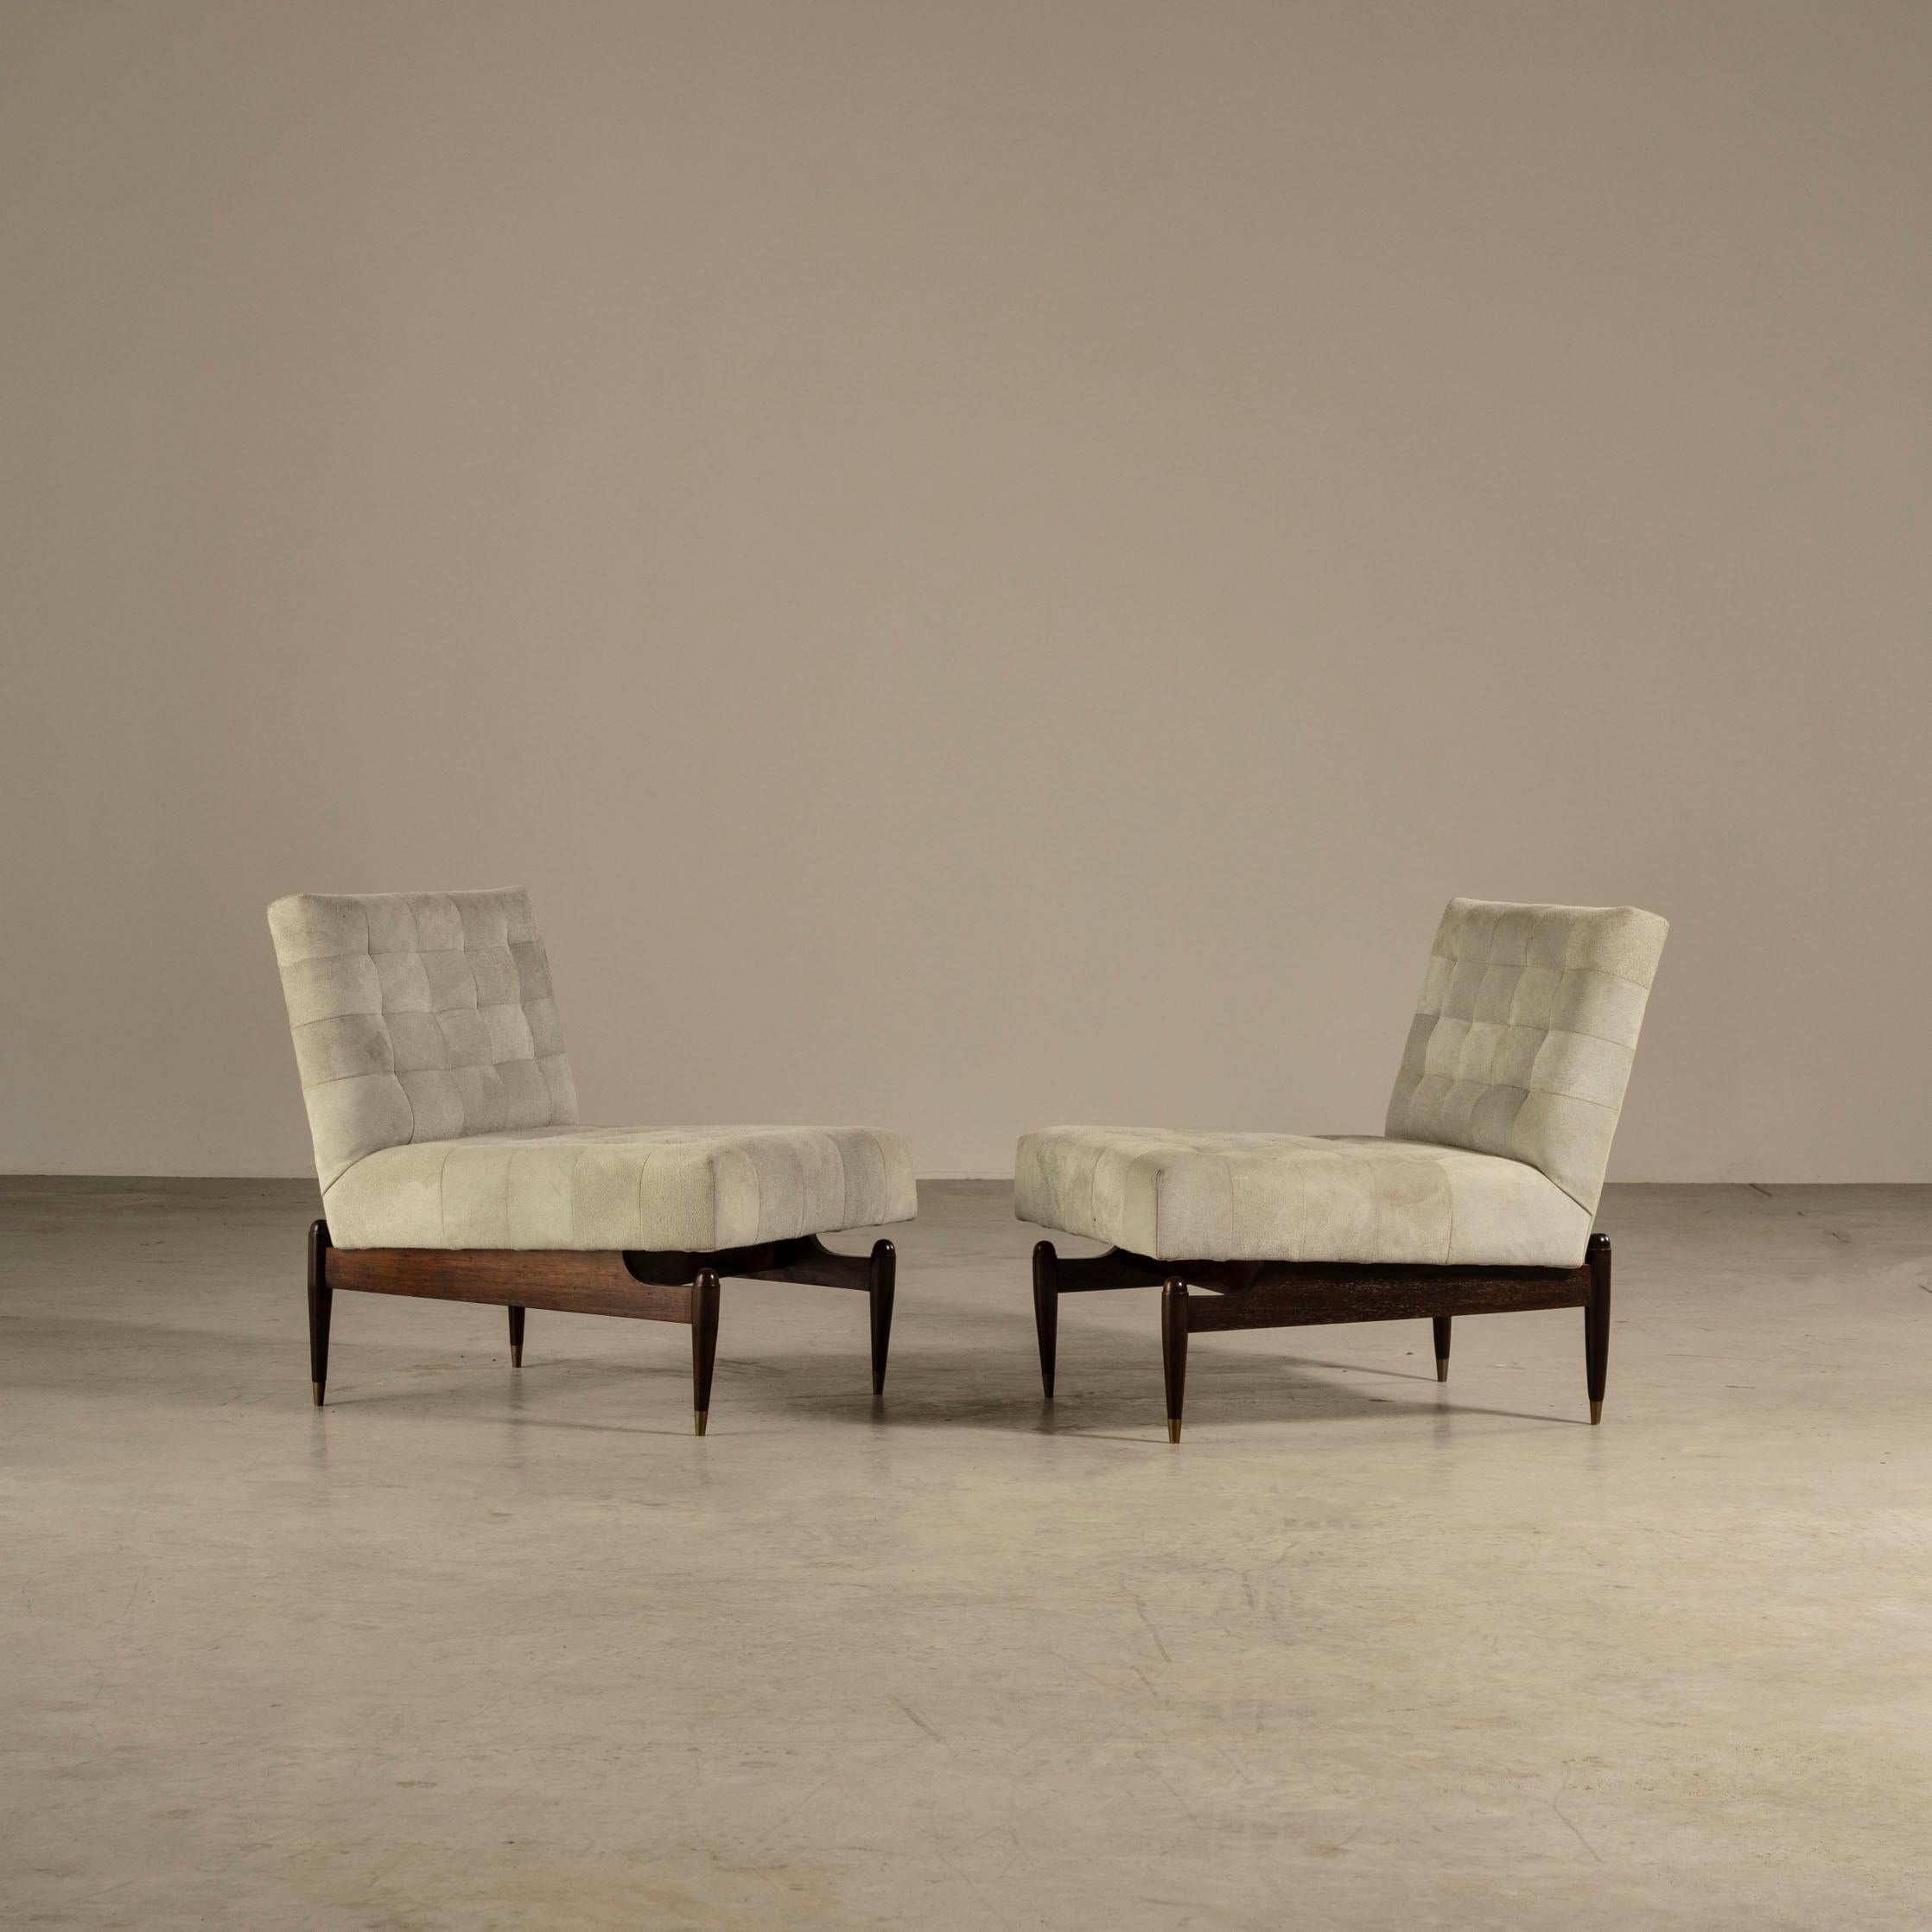 Ces deux chaises longues sont une représentation étonnante du design brésilien du milieu du siècle dernier, produit par le prestigieux collectif de design Liceu de Artes e Ofícios. Les cadres des chaises sont fabriqués à partir d'un bois dur